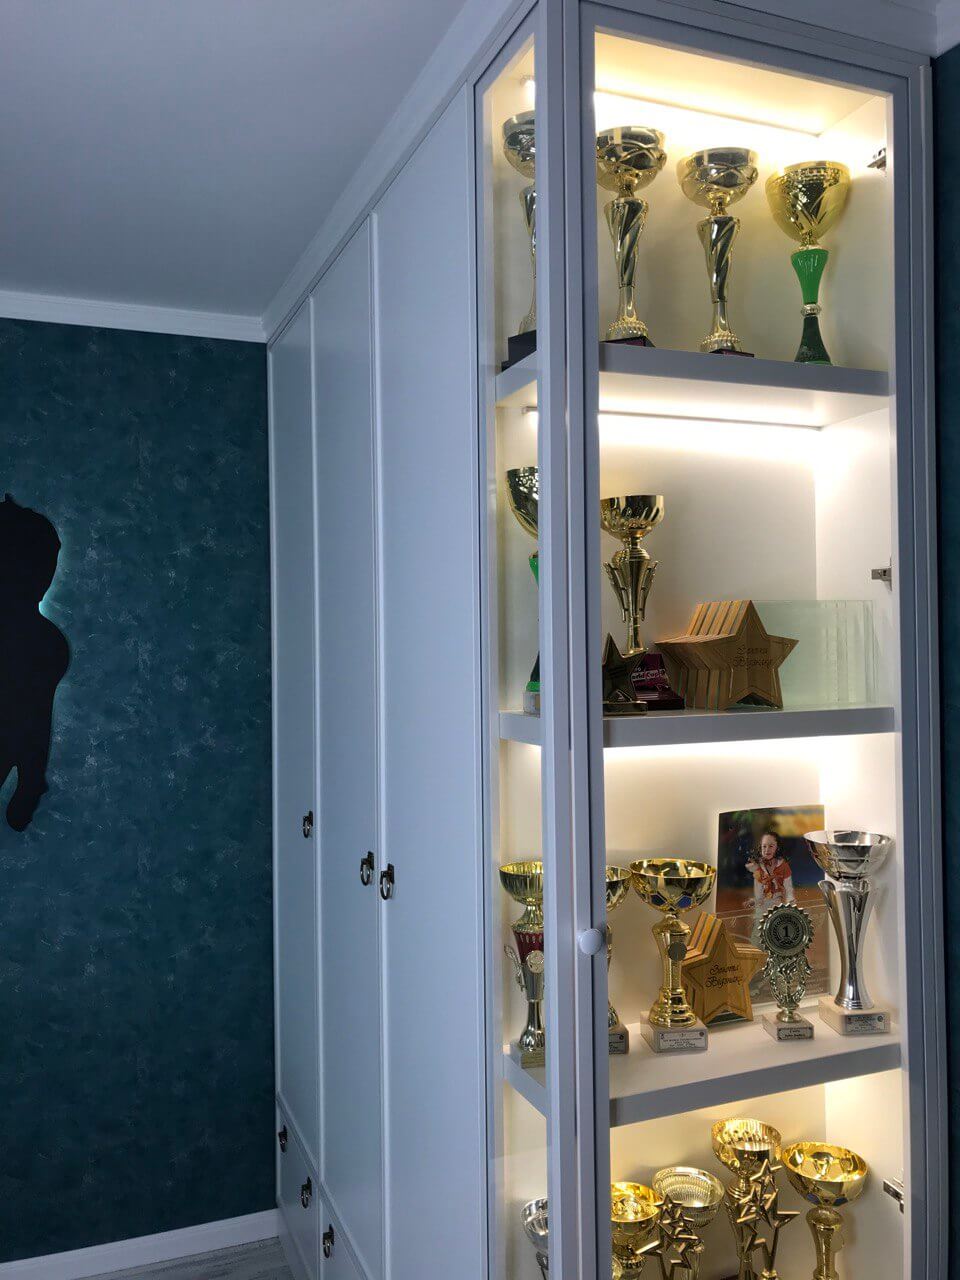 на фото шкаф в детскую комнату, справа сделан ряд сверху донизу с подсветкой для спортивных наград. Правая часть шкафа с наградами на первом плане